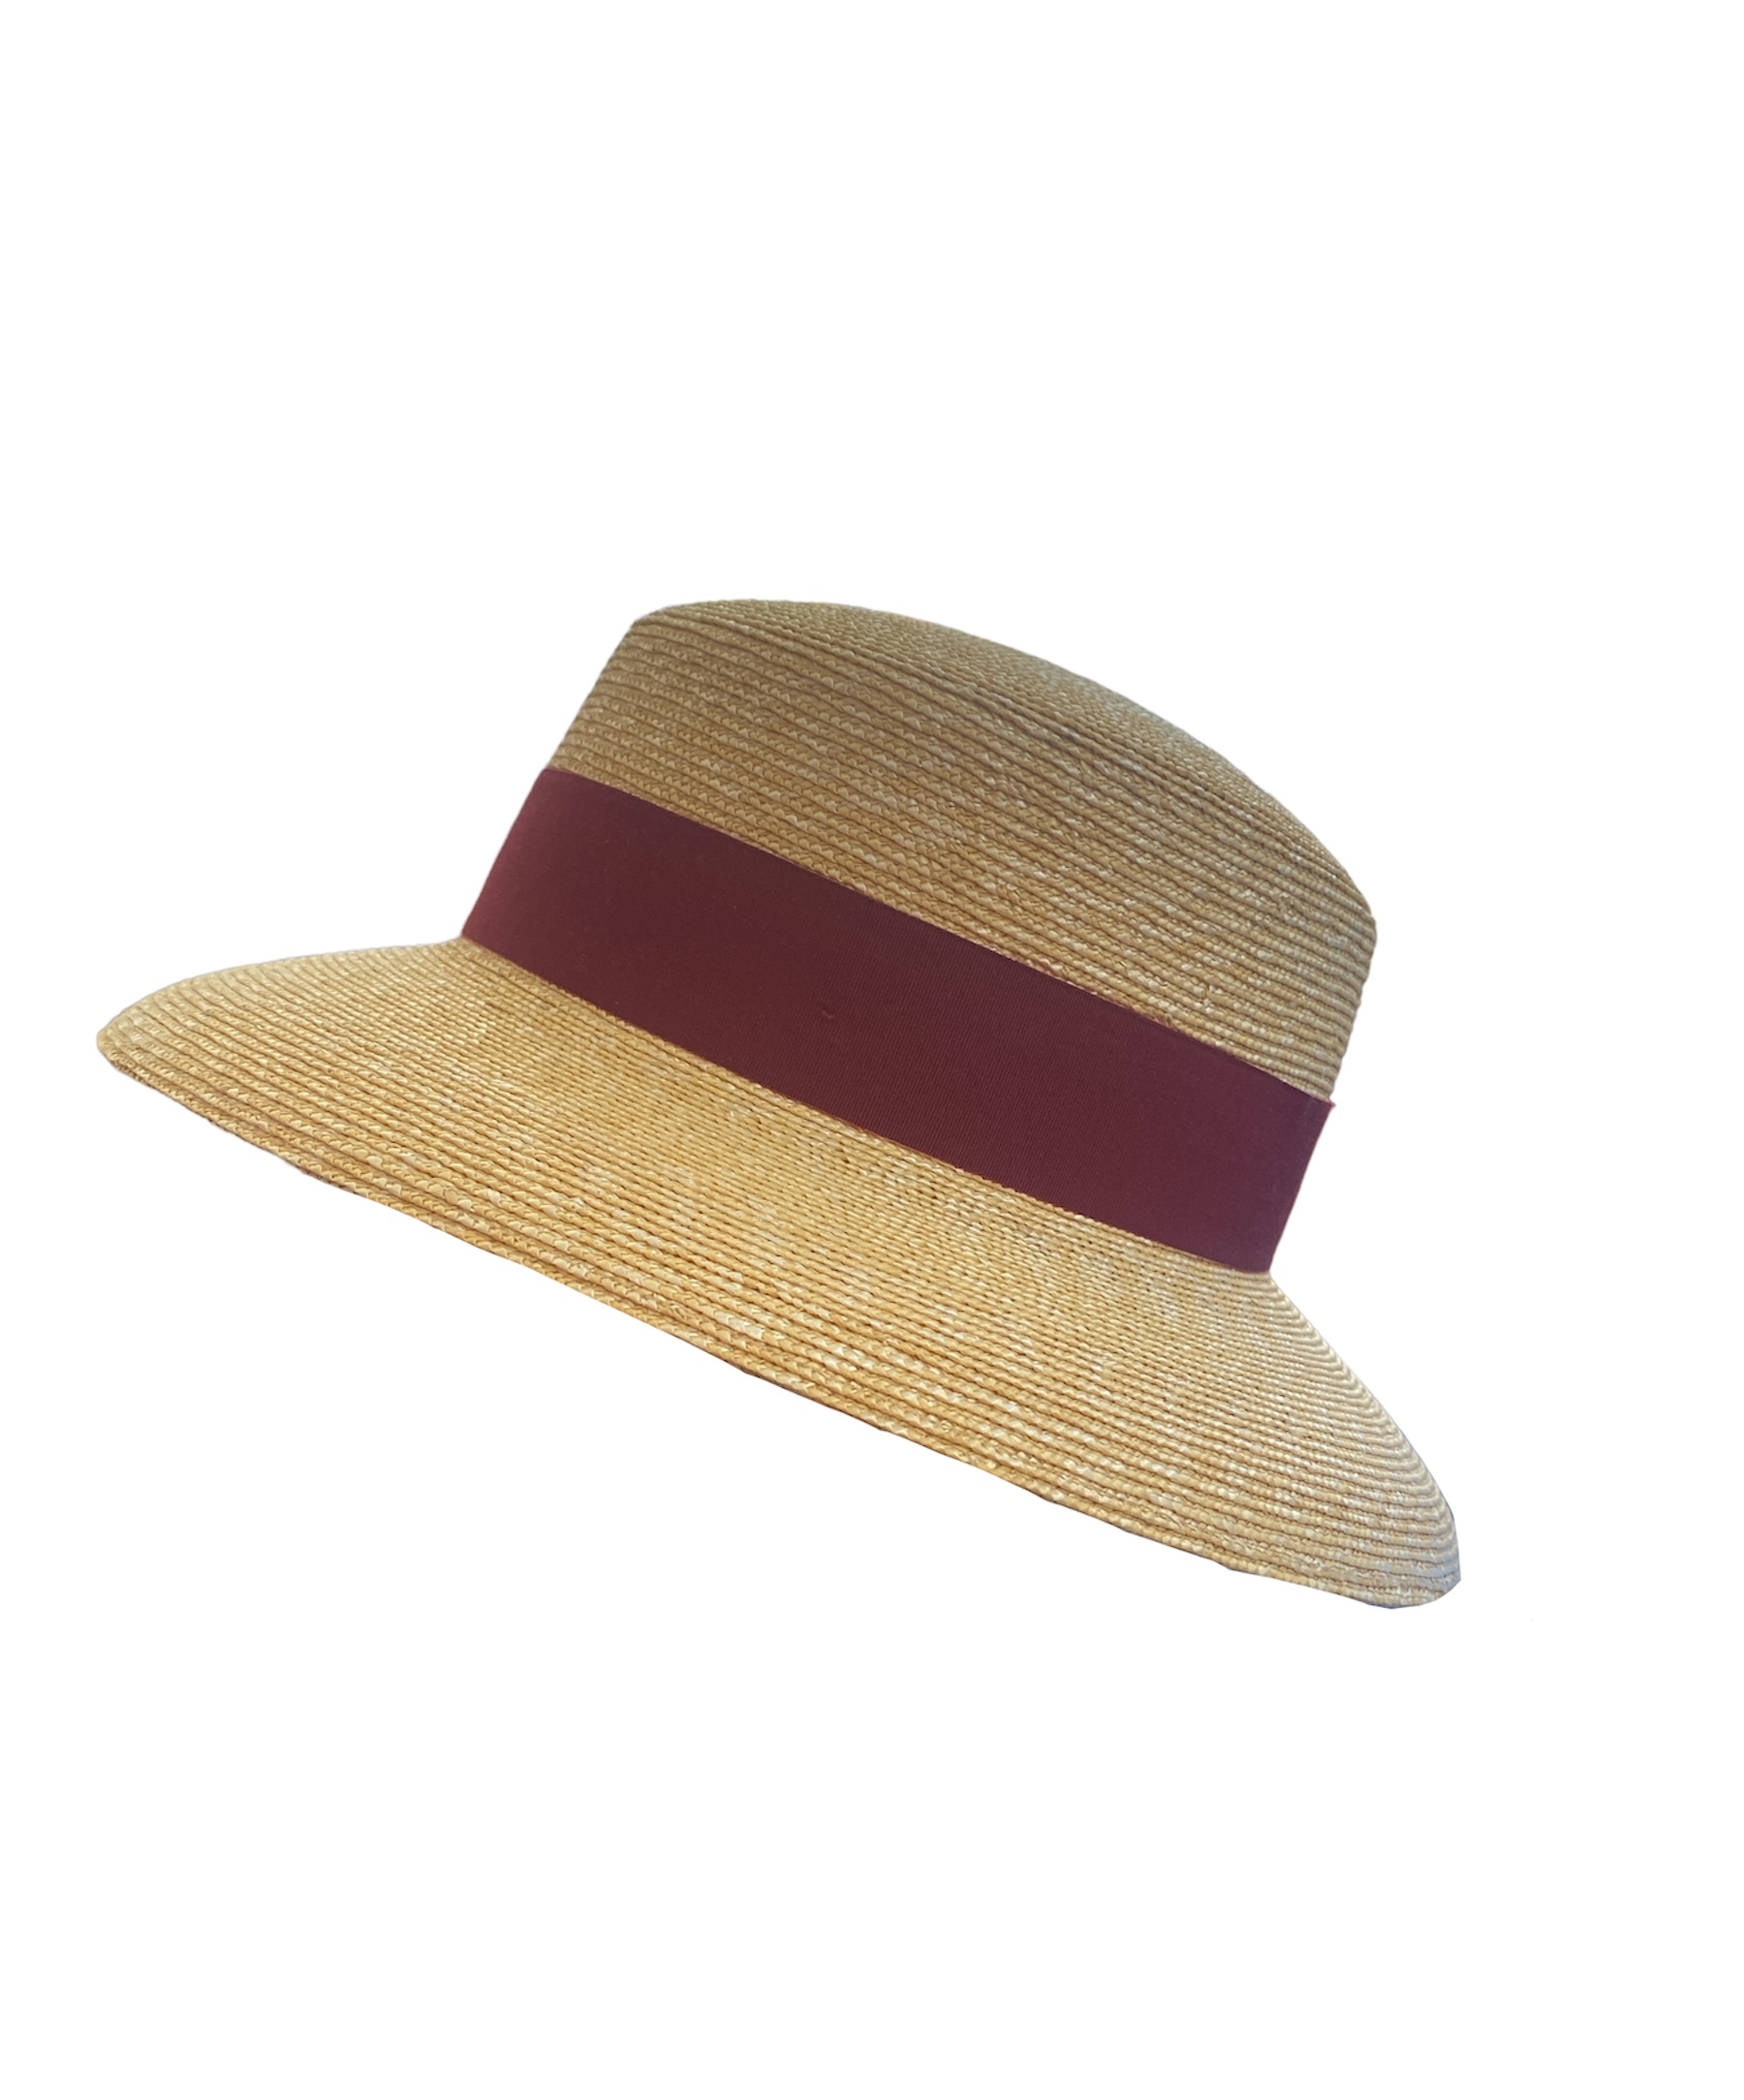 Chapeau en paille Vecchi avec ganse rouge, disponible en taille unique